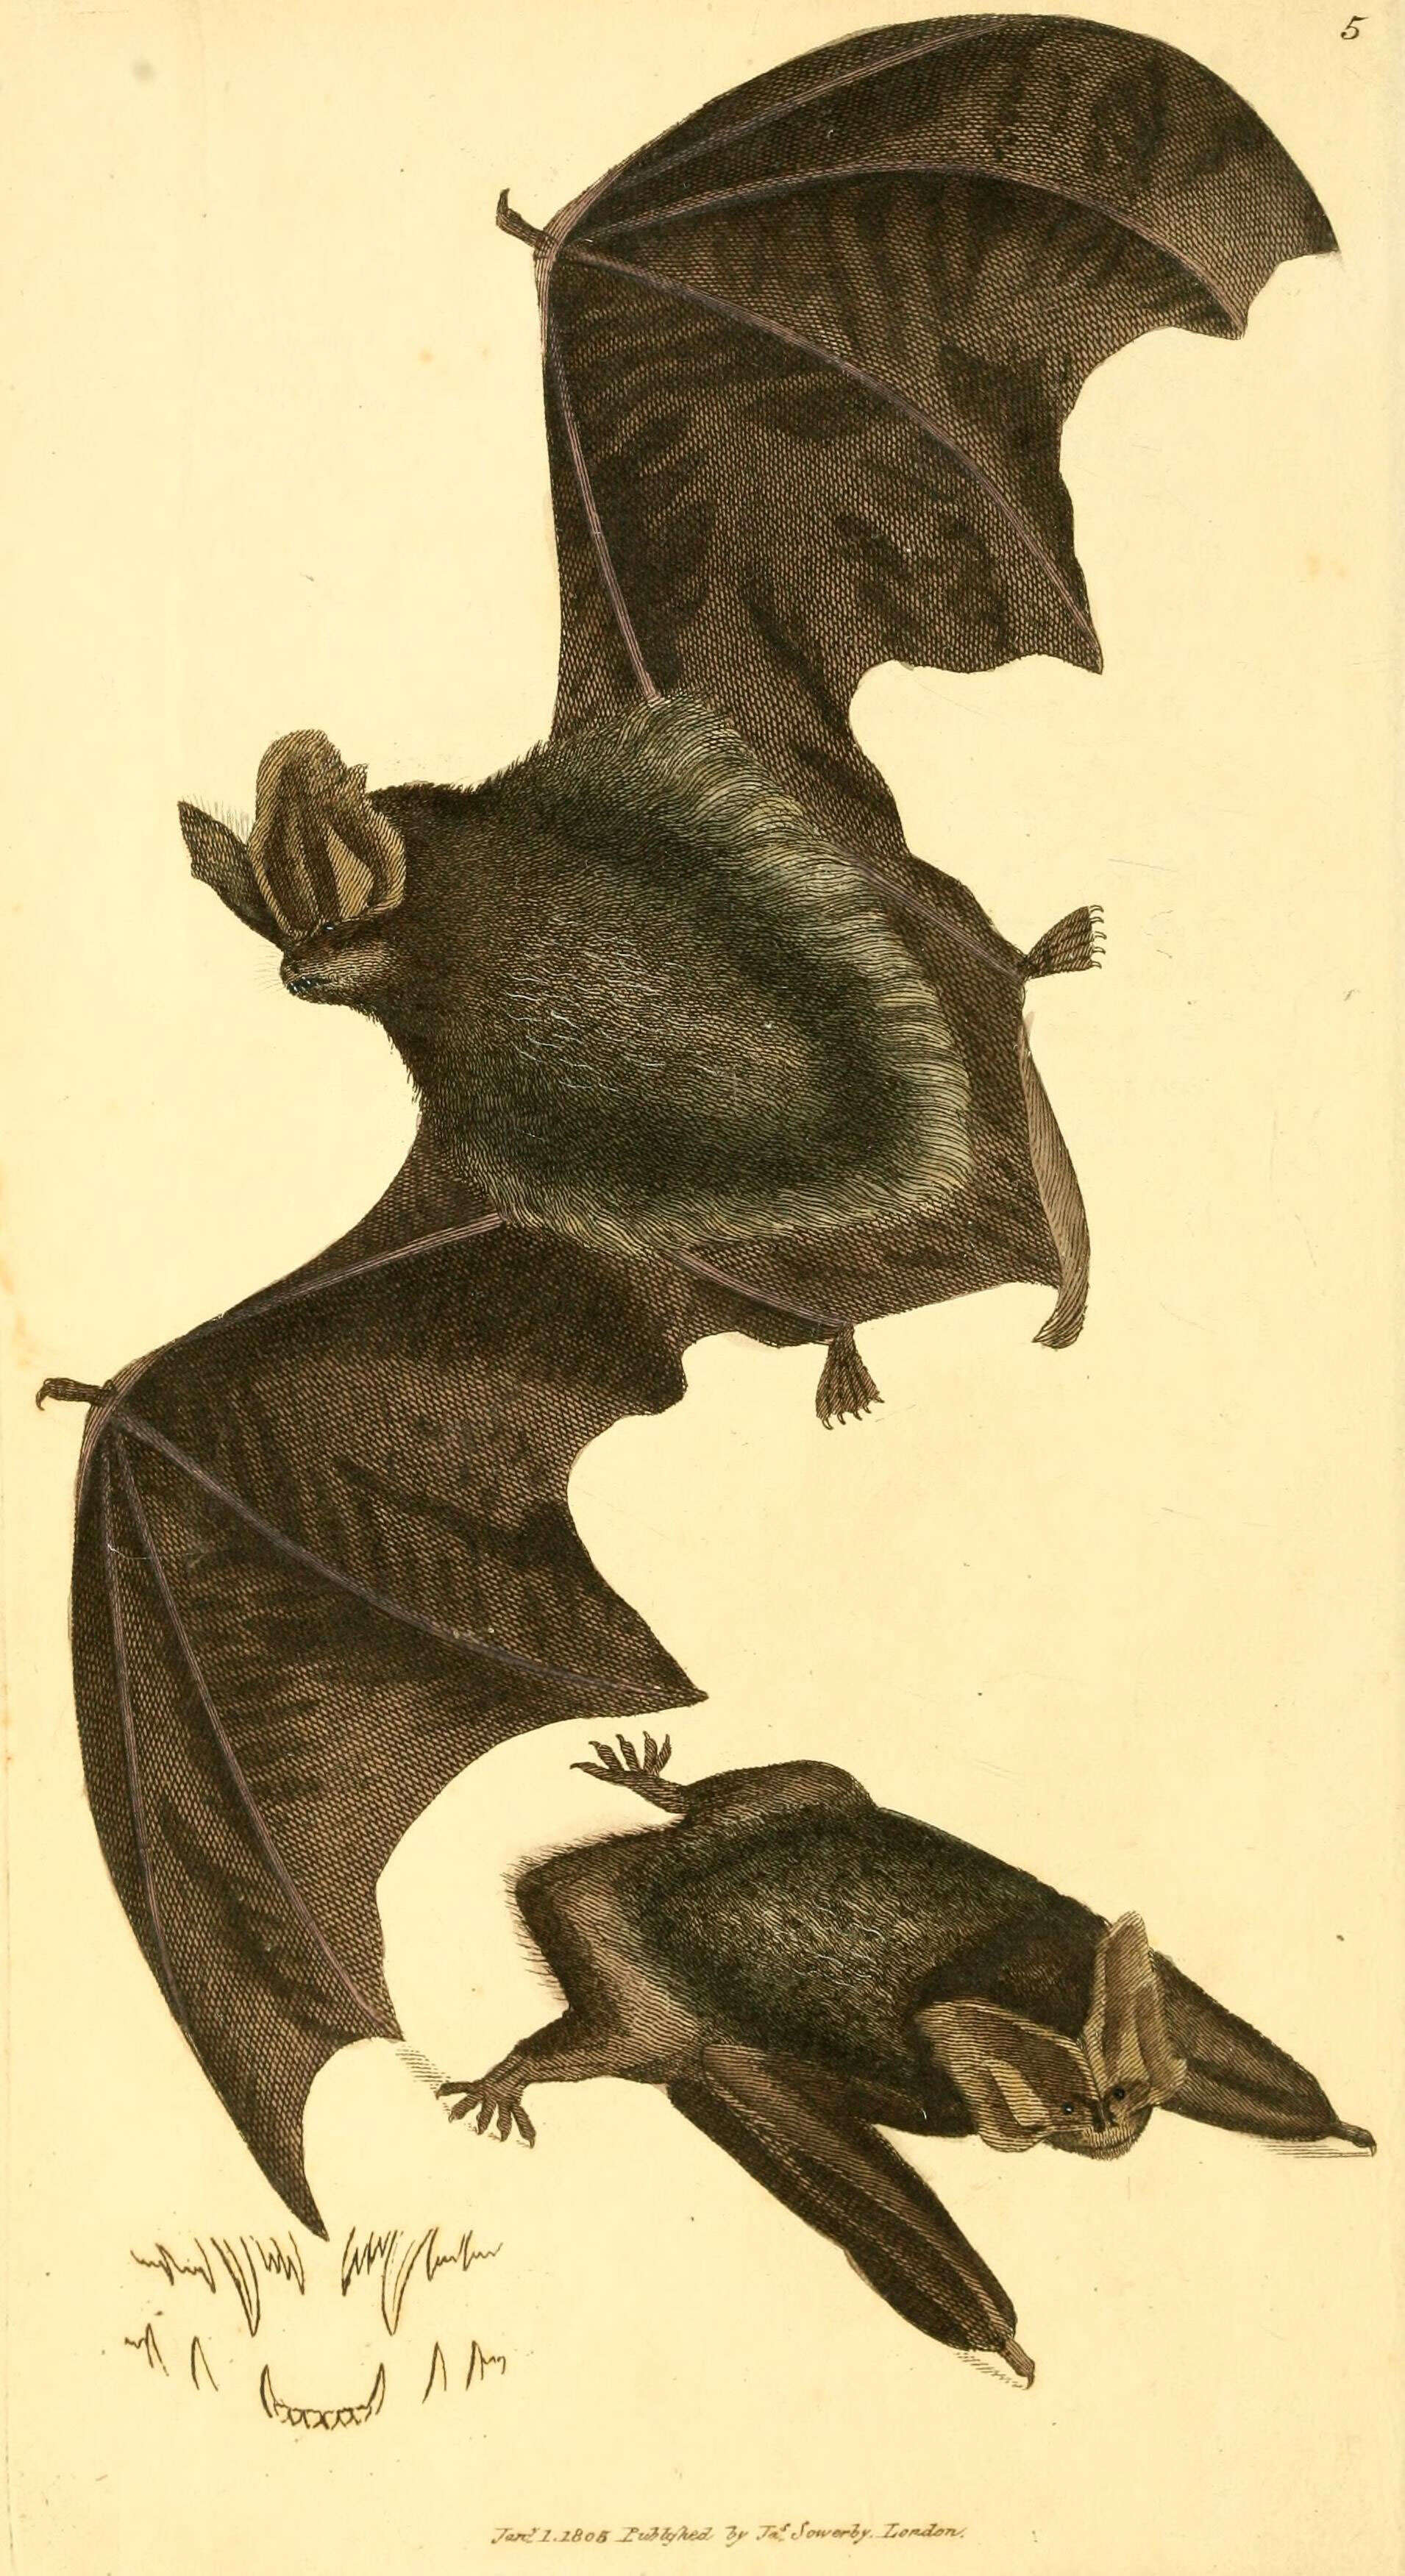 Image of Barbastella barbastellus barbastellus (Schreber 1774)